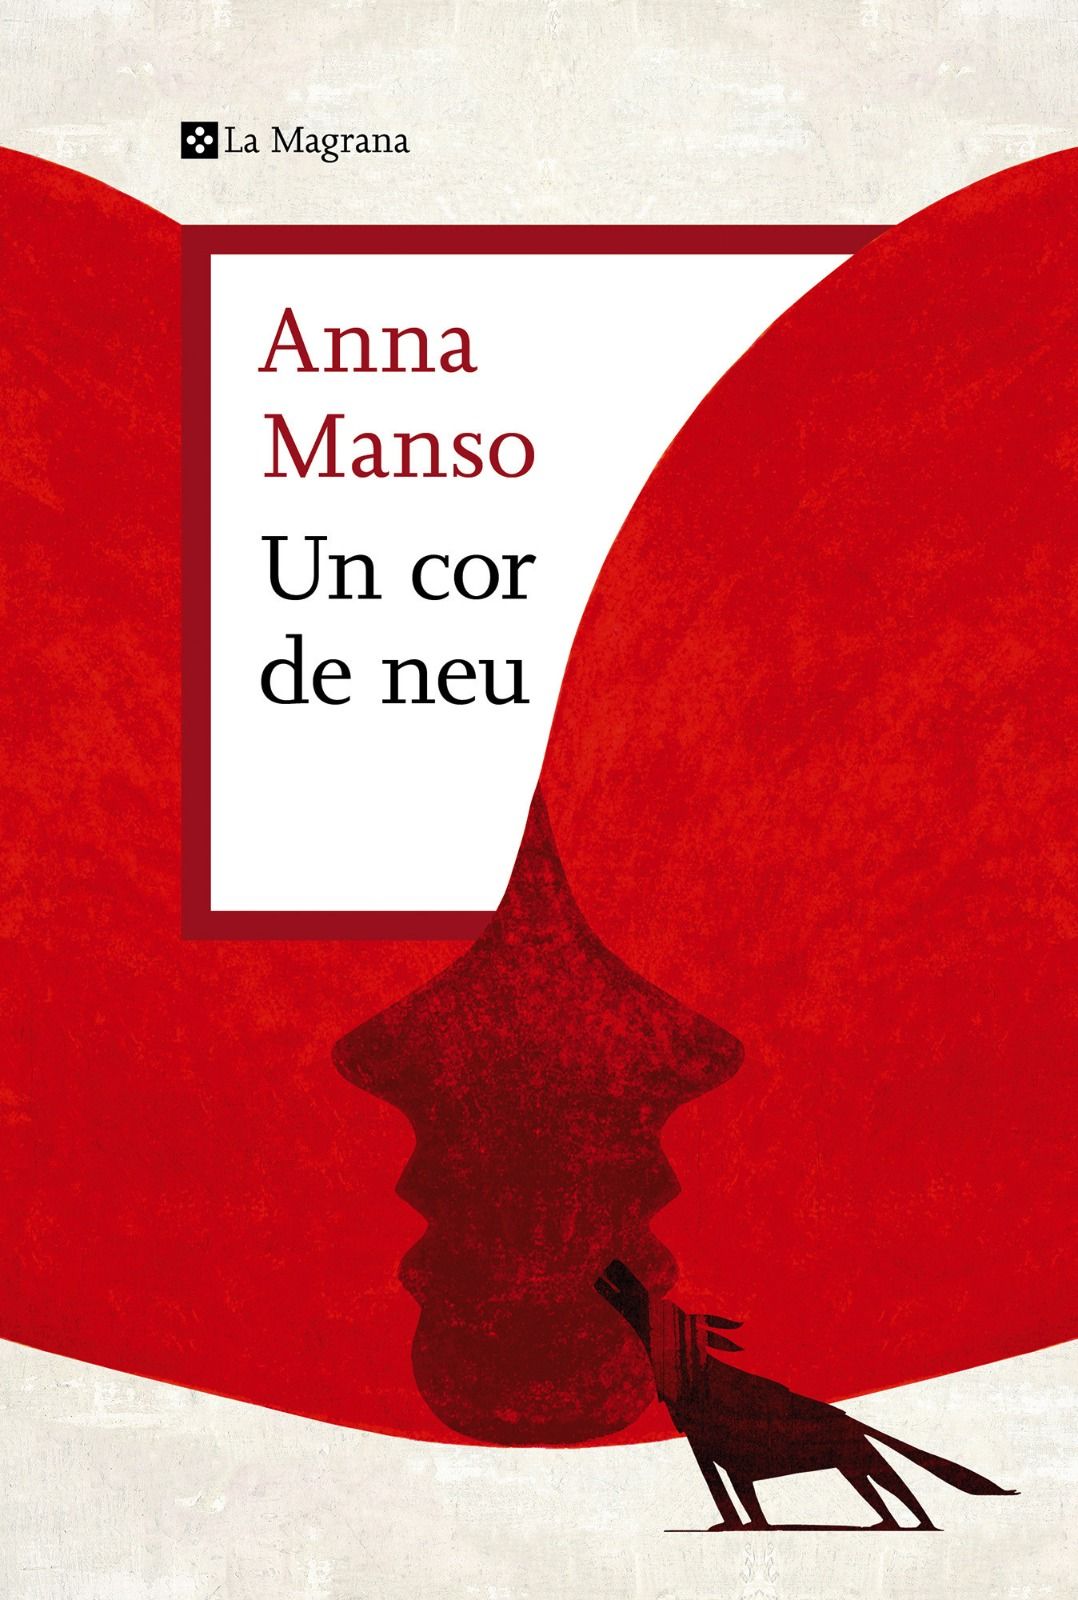 Portada del llibre d'Anna Manso.